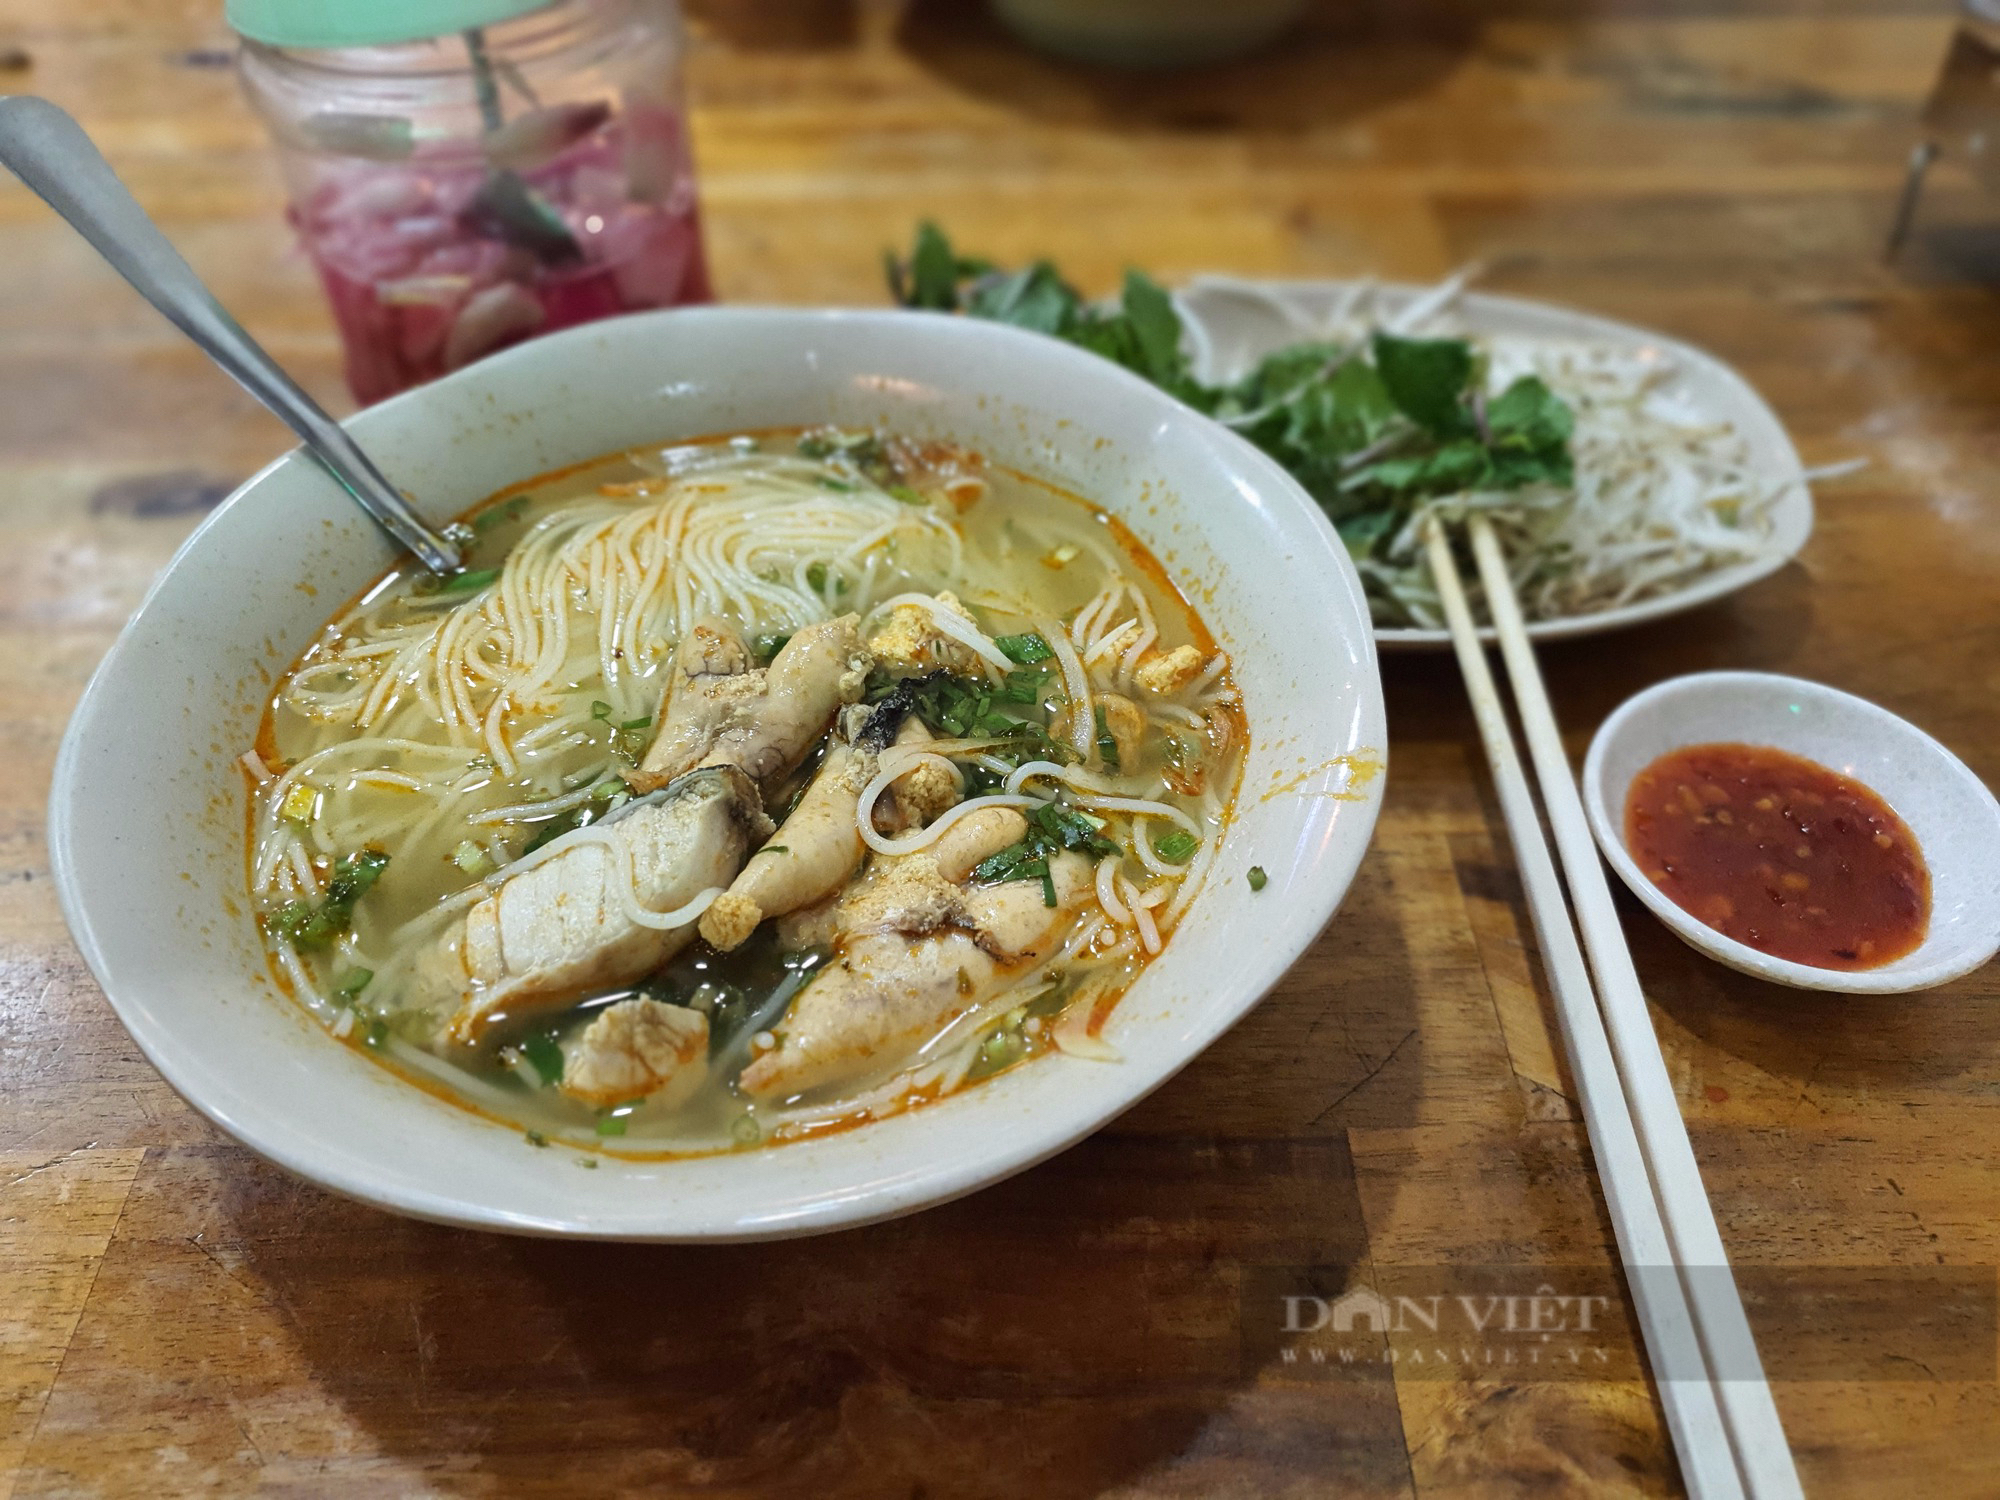 Sài Gòn quán: Bún chả cá Quy Nhơn trứ danh, đầy ắp trứng cá, nạc cá, sứa biển, khách muốn ăn gì cũng có - Ảnh 3.